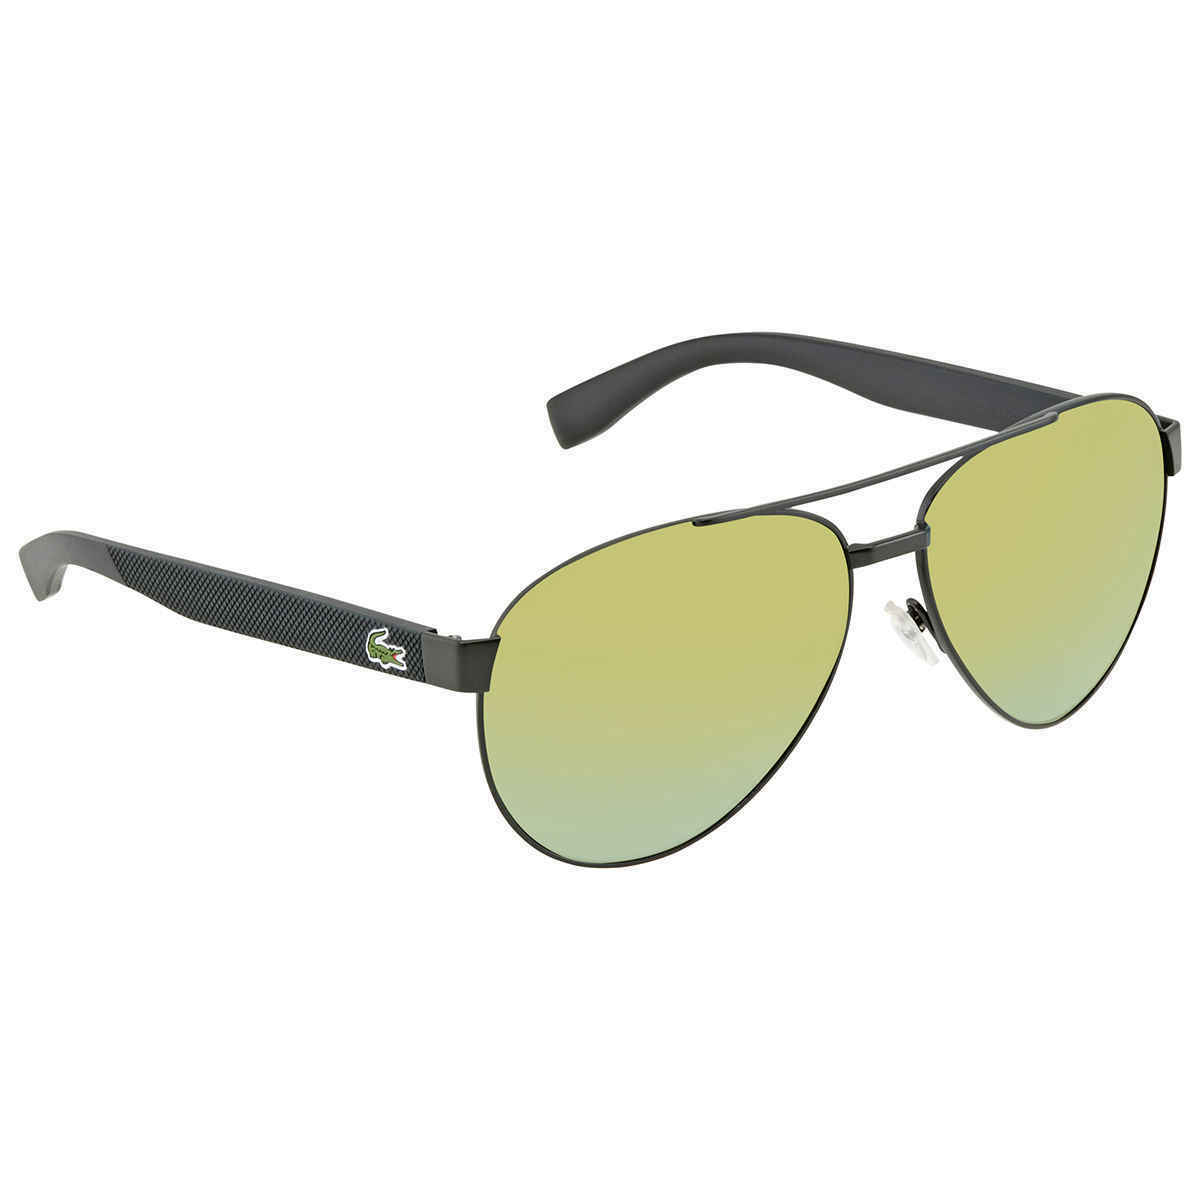 Lacoste Green Square Unisex Sunglasses L185S 315 60